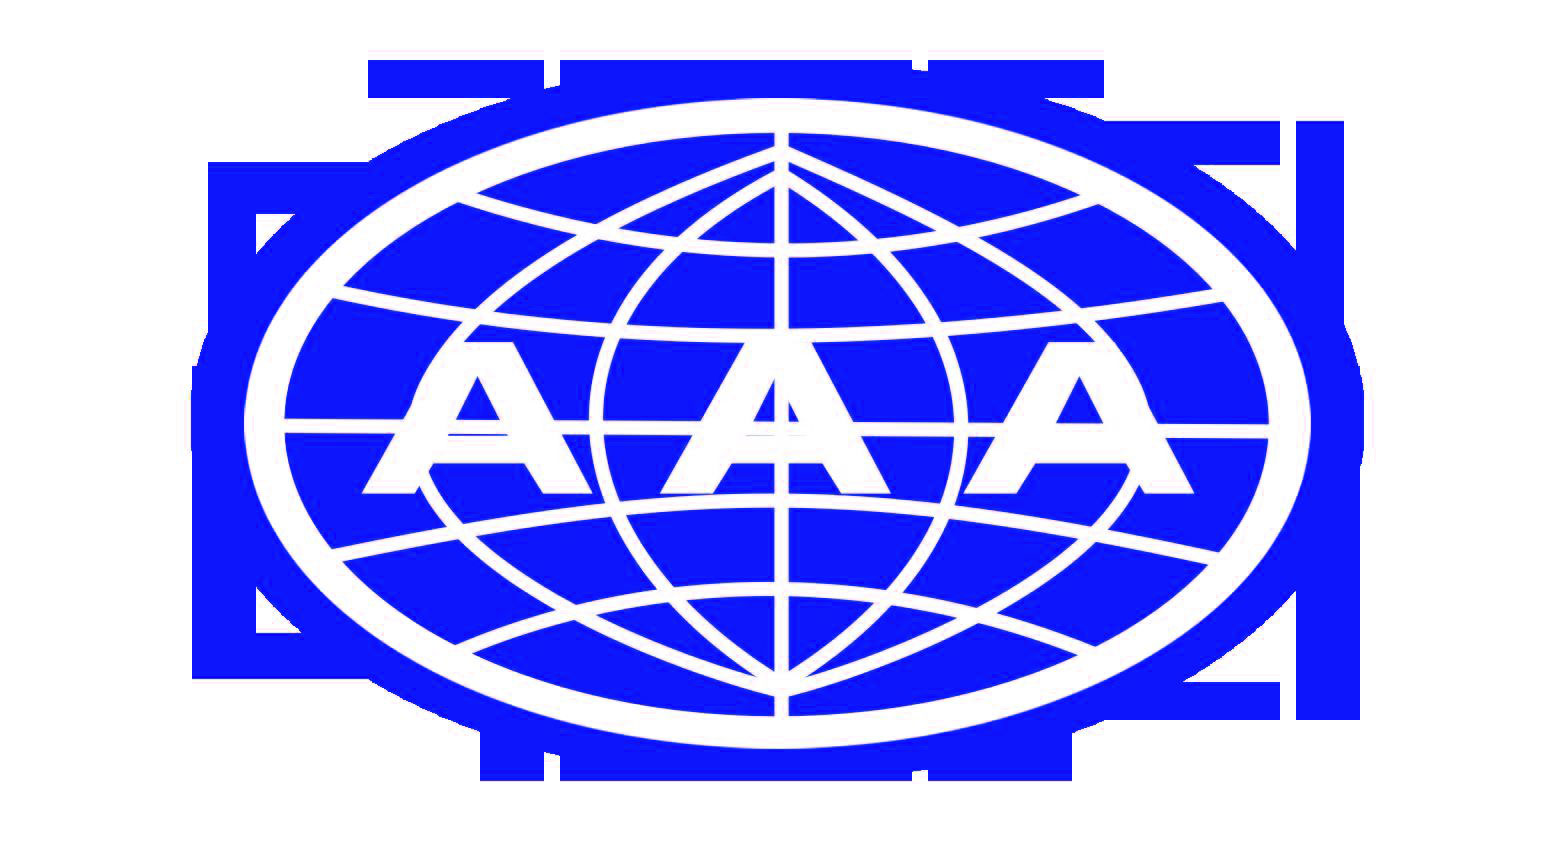 AAA信用证书及“重合同守信用”等企业荣誉证书，已成为企业形象提升、国企竞标、政府采购的必备条件。天津岩真，可以帮您快捷省力的取得权威机构证书！